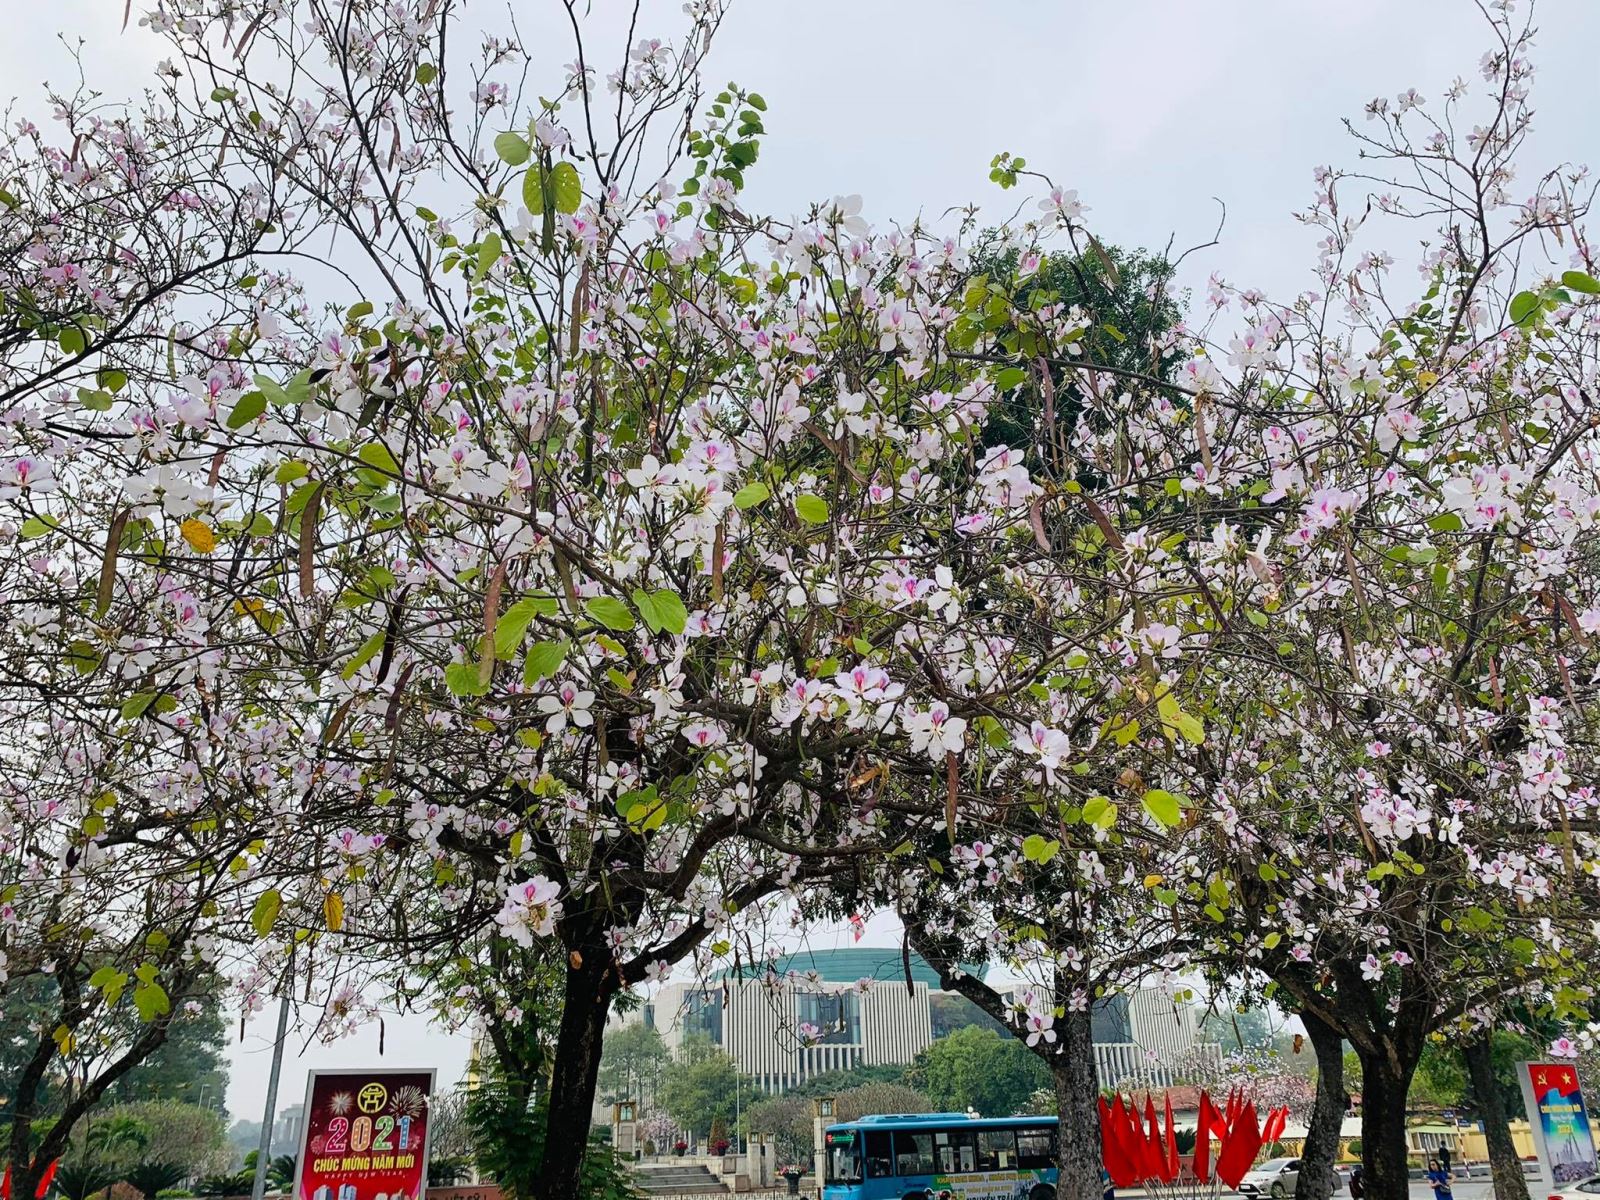 Hoa ban Tây Bắc: Hoa ban là biểu tượng đặc trưng của vùng Tây Bắc Việt Nam. Những cánh hoa xinh đẹp, các tán nhãn đầy quyến rũ khiến bất cứ ai cũng phải mê mẩn. Hãy để mình lạc vào không gian thiên nhiên mộc mạc, được ngắm nhìn những đóa hoa ban khoe sắc trên nền xanh ngút ngàn, bạn sẽ cảm nhận được sức hút và giá trị của loài hoa này.